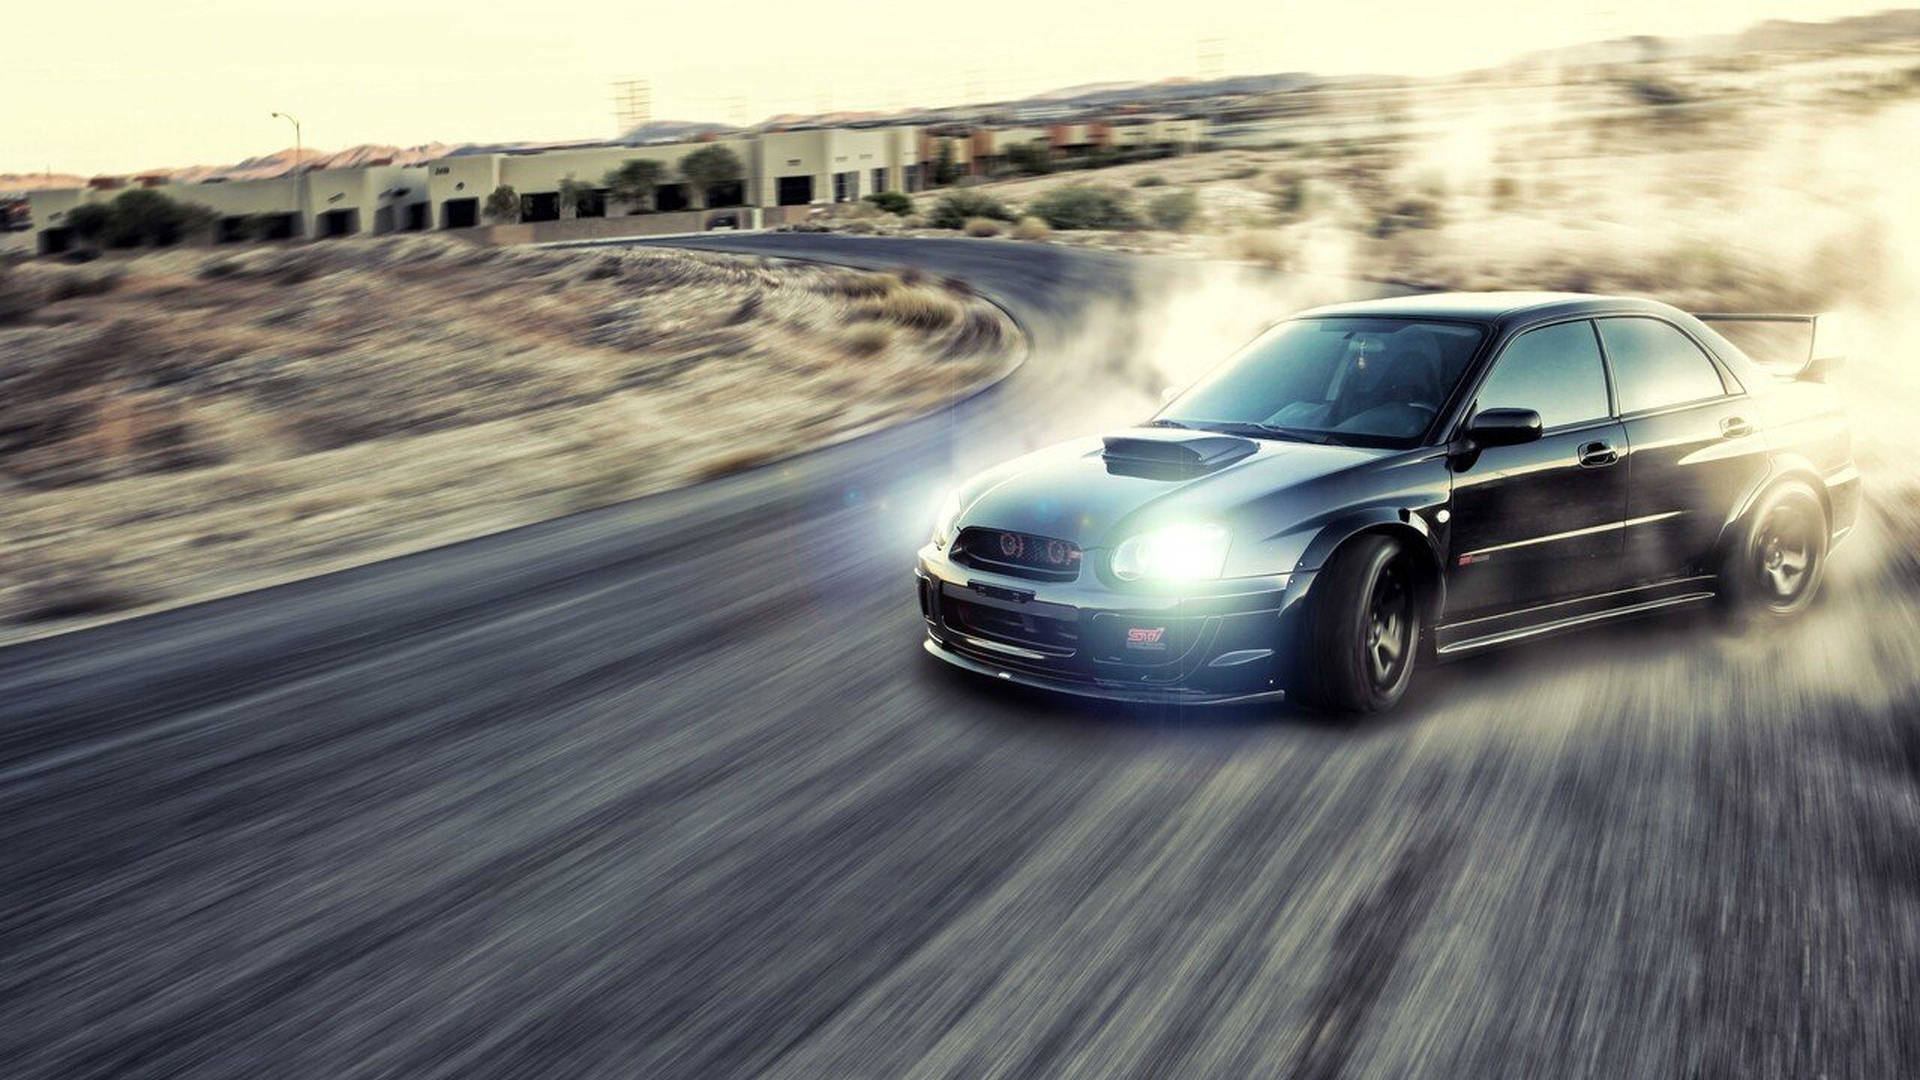 Caption: Roaring Subaru Impreza Wrx Drift Car In Action